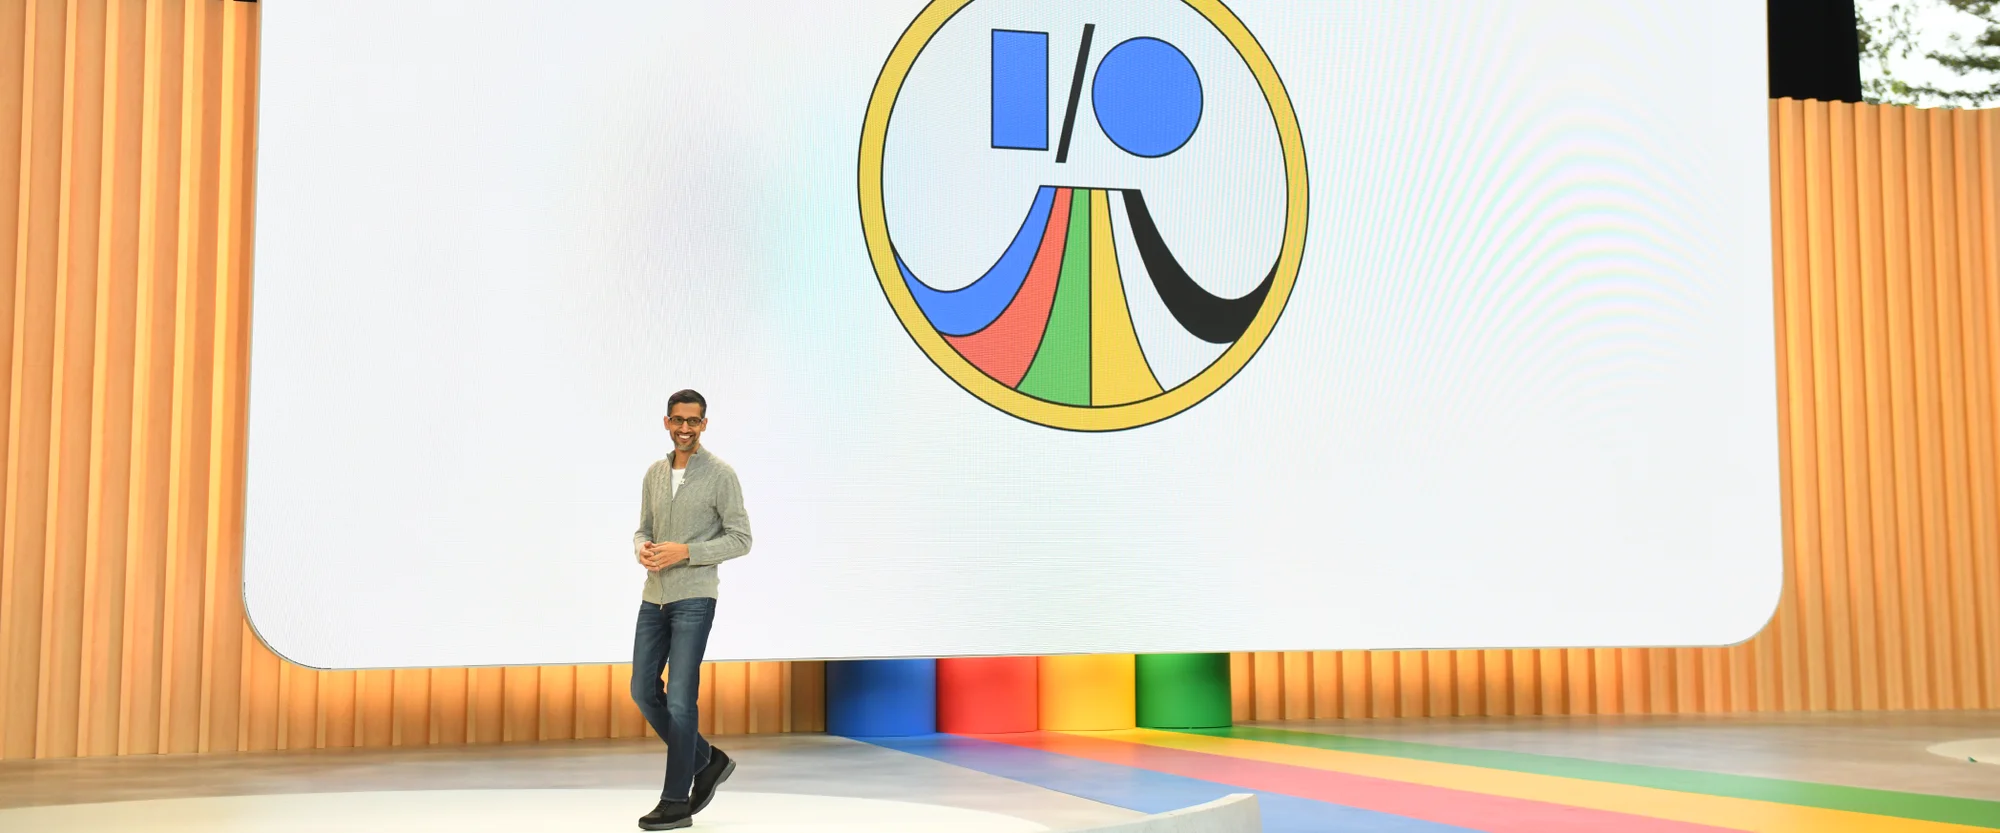 Visão  Alpha GO da Google pode vir a vencer o melhor jogador do mundo  outra vez